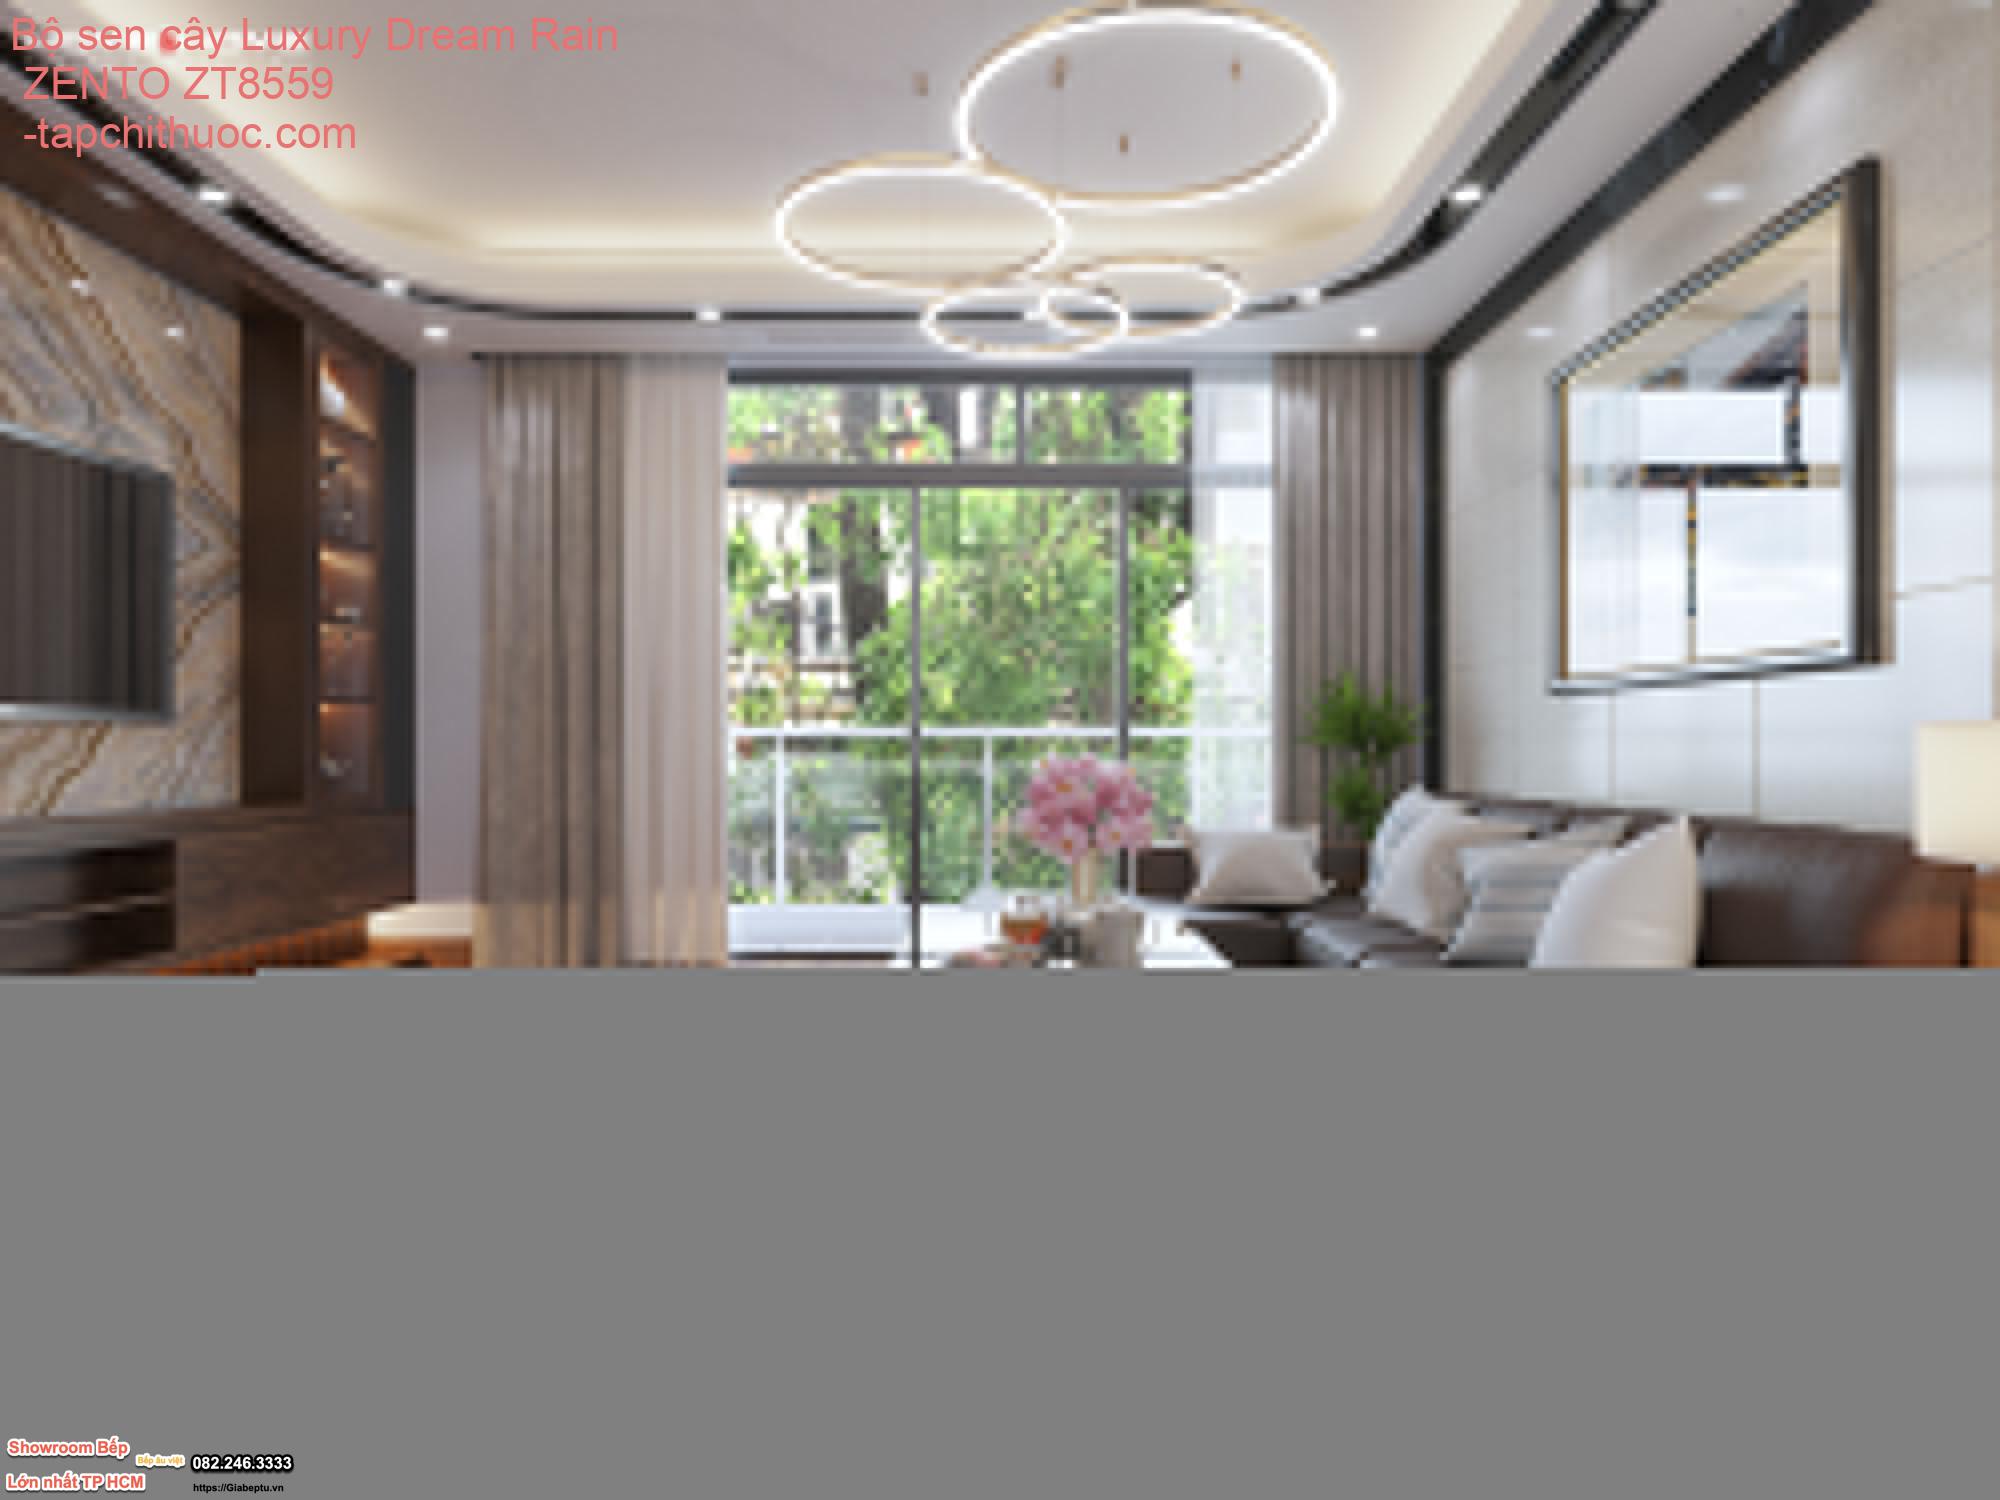 Bộ sen cây Luxury Dream Rain ZENTO ZT8559 